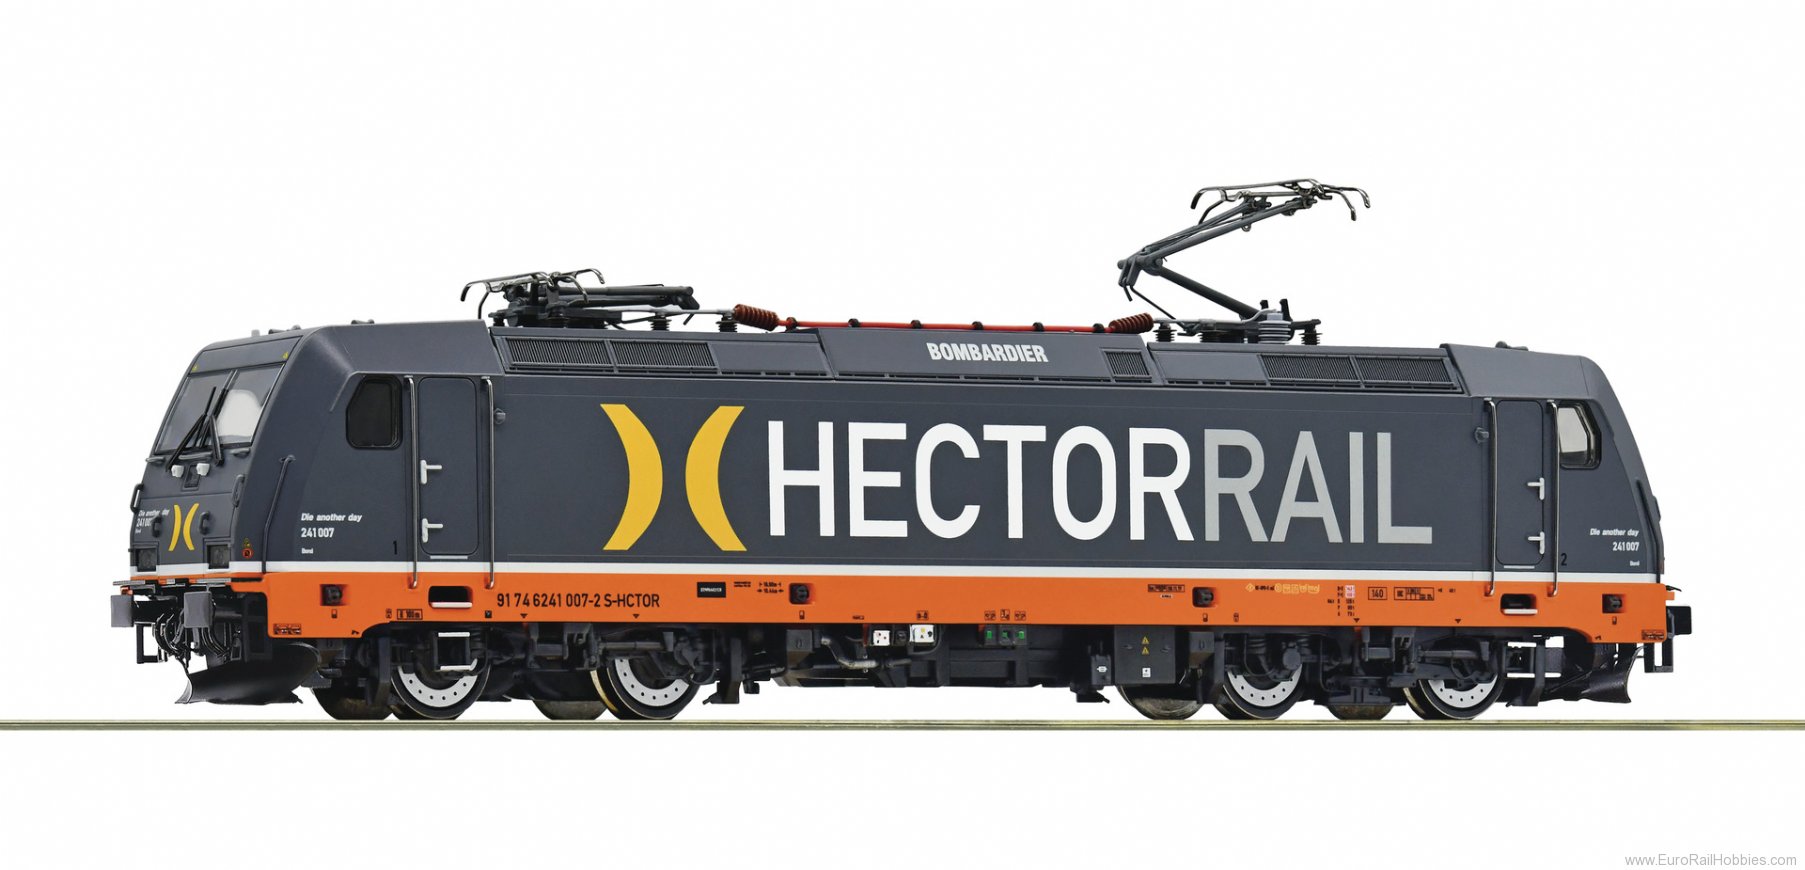 Roco 73948 Hectorrail Electric locomotive 241 007-2 (DCC